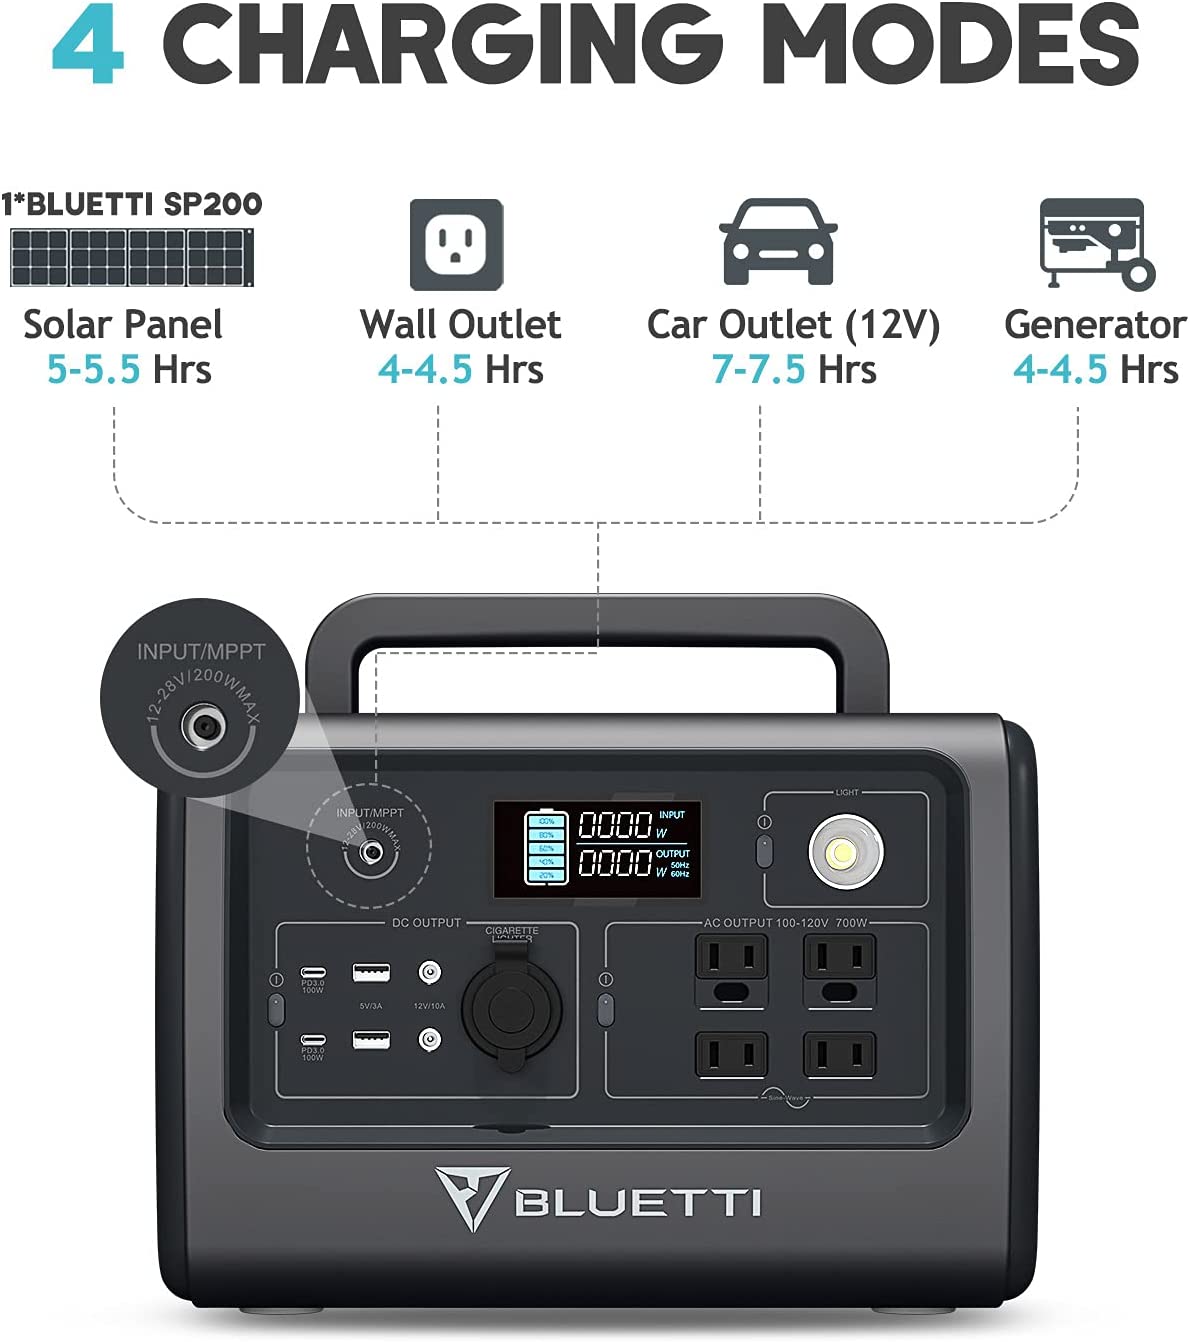 4 modos de carga disponibles con la bluetti: panel solar, receptaculo, auto y generador de gasolina.